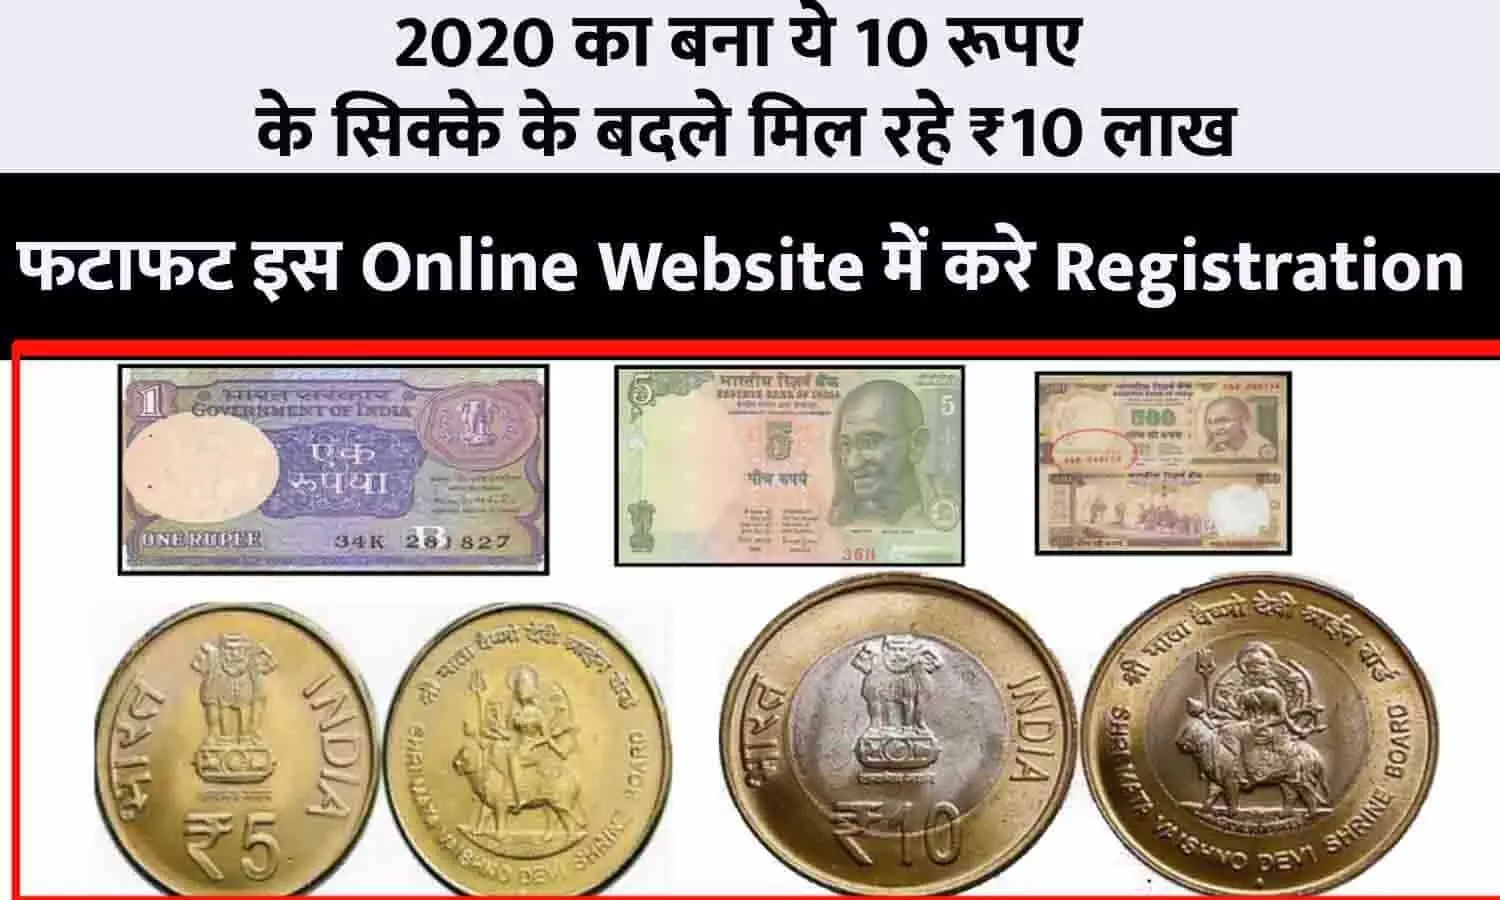 Sell Coin 2023: 2020 का बना ये 10 रूपए के सिक्के के बदले मिल रहे ₹10 लाख, फटाफट इस Online Website में करे Registration